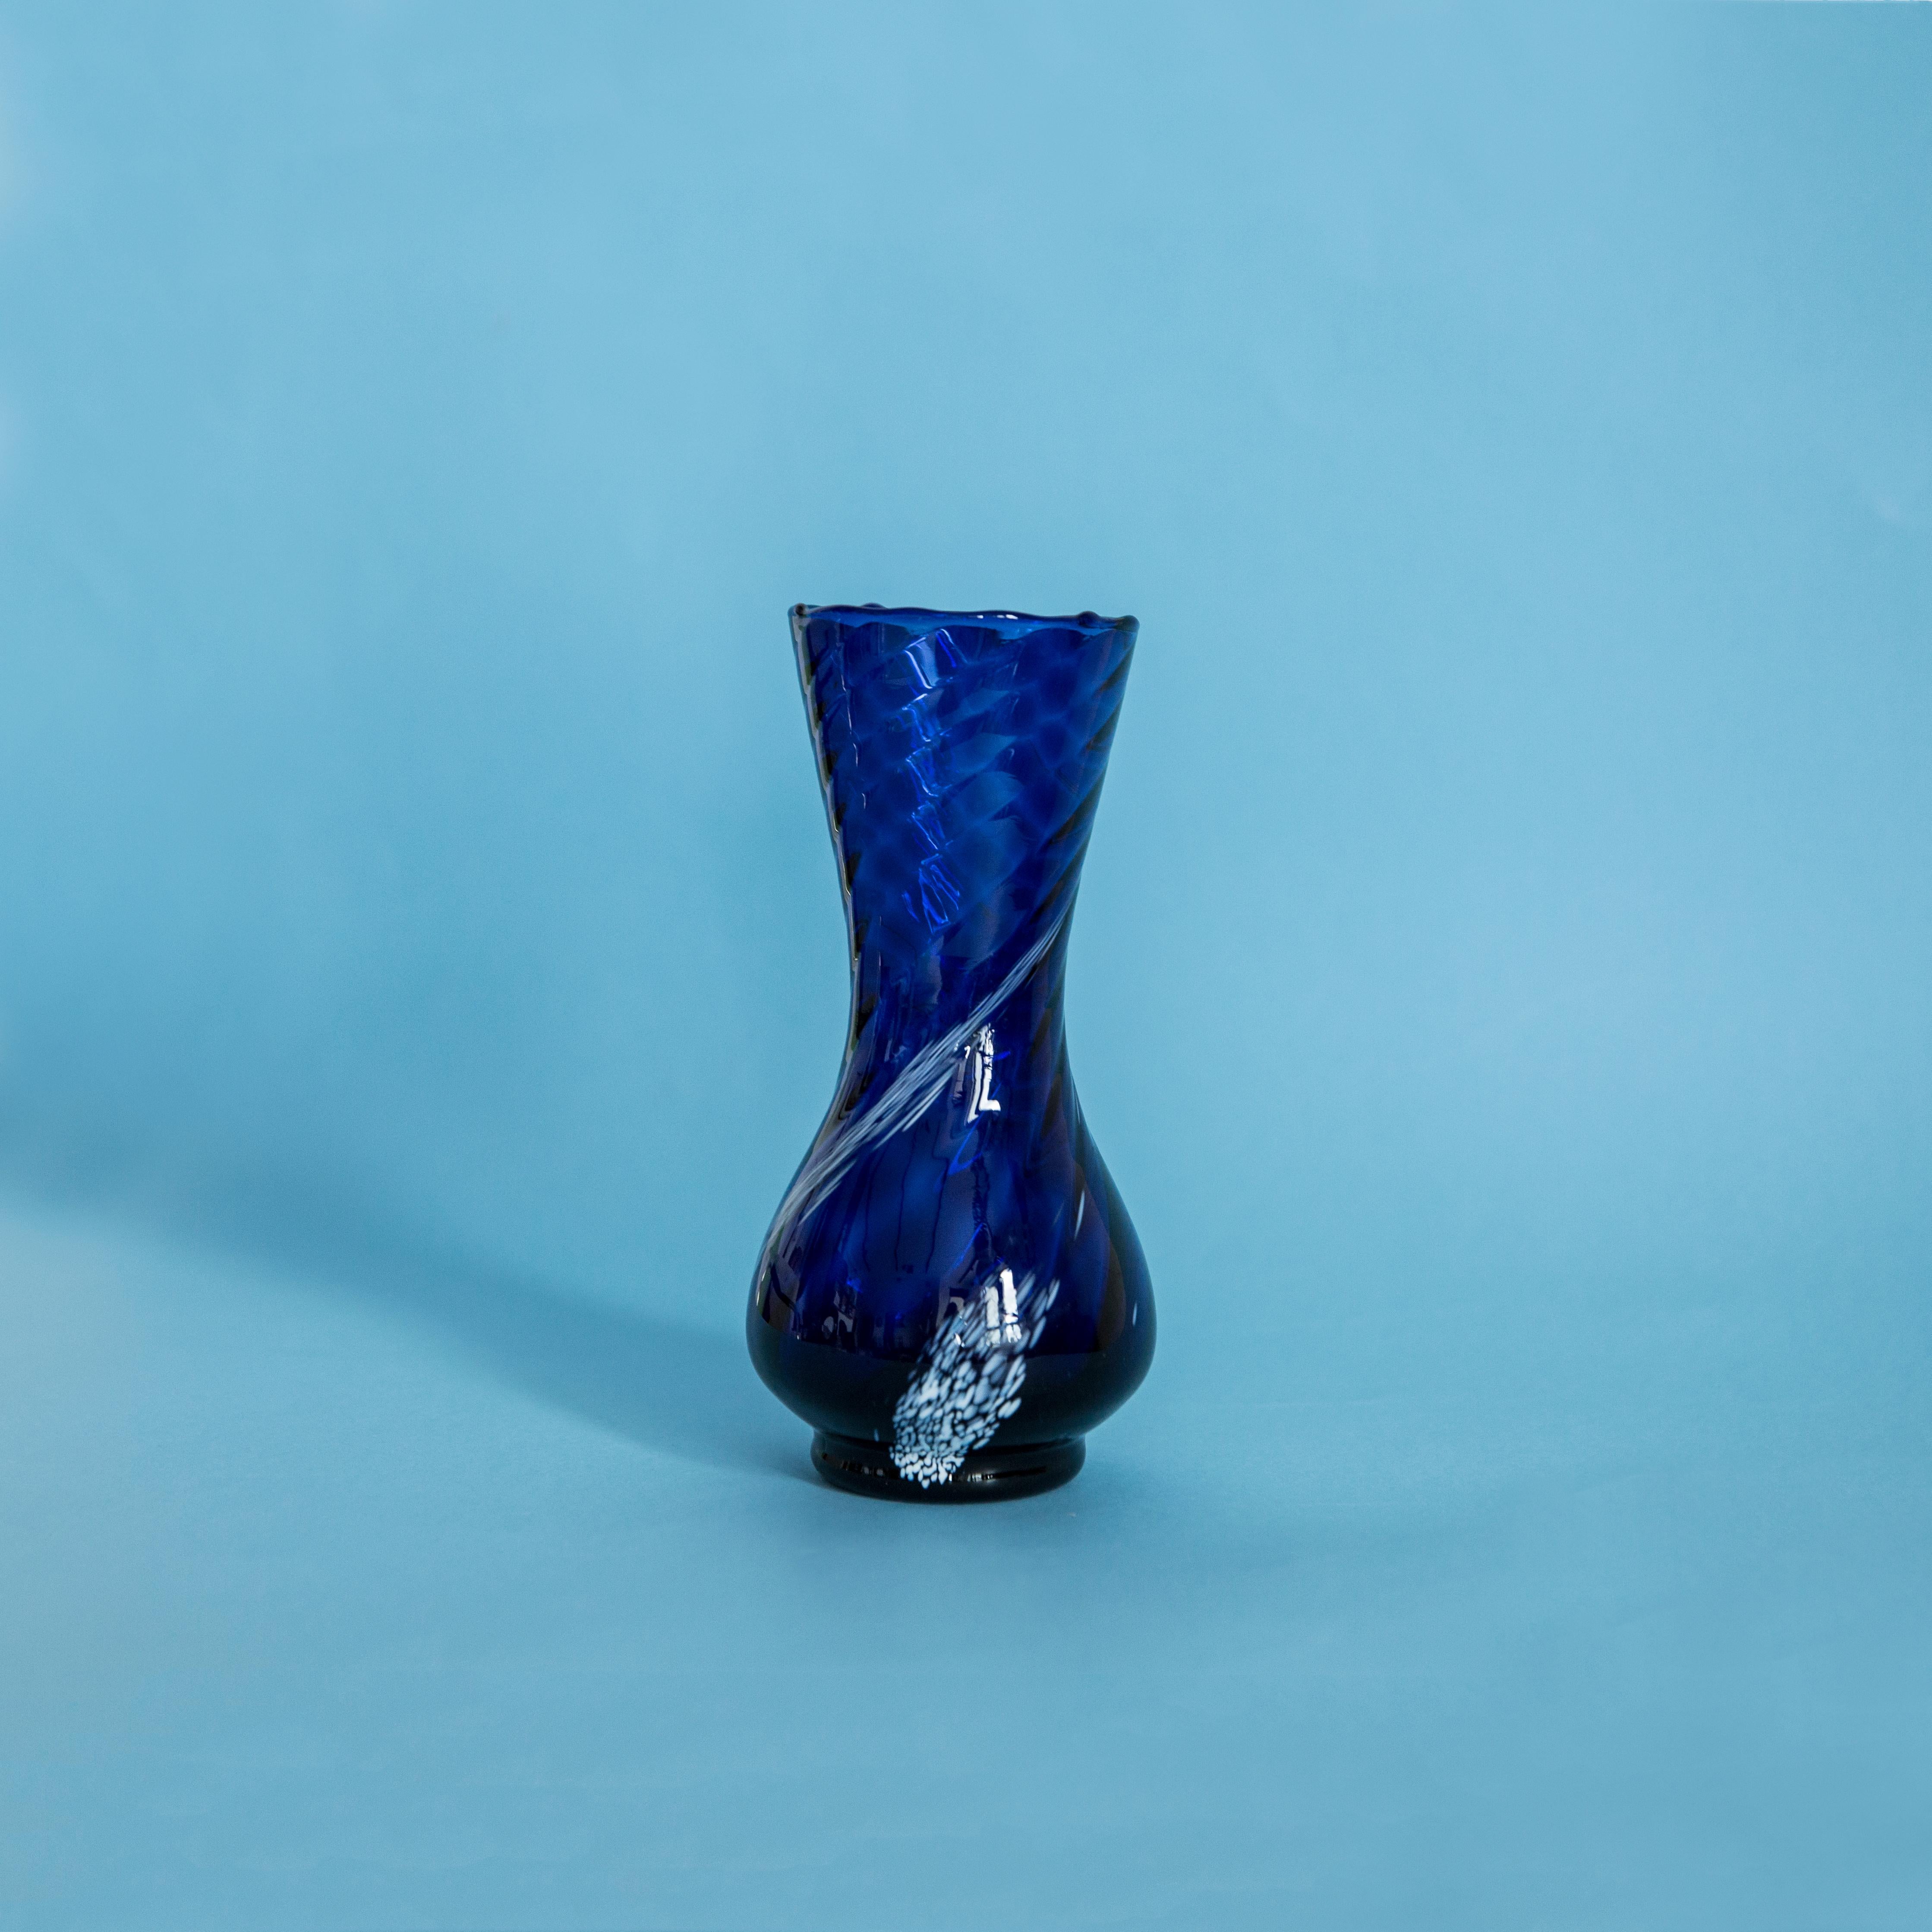 Blaue und weiße Vase in erstaunlich organischer Form. 
Produziert in den 1960er Jahren. Glas in perfektem Zustand. 
Die Vase sieht aus, als wäre sie gerade erst aus der Schachtel genommen worden.

Keine Zacken, Defekte, etc.etc. Die äußere